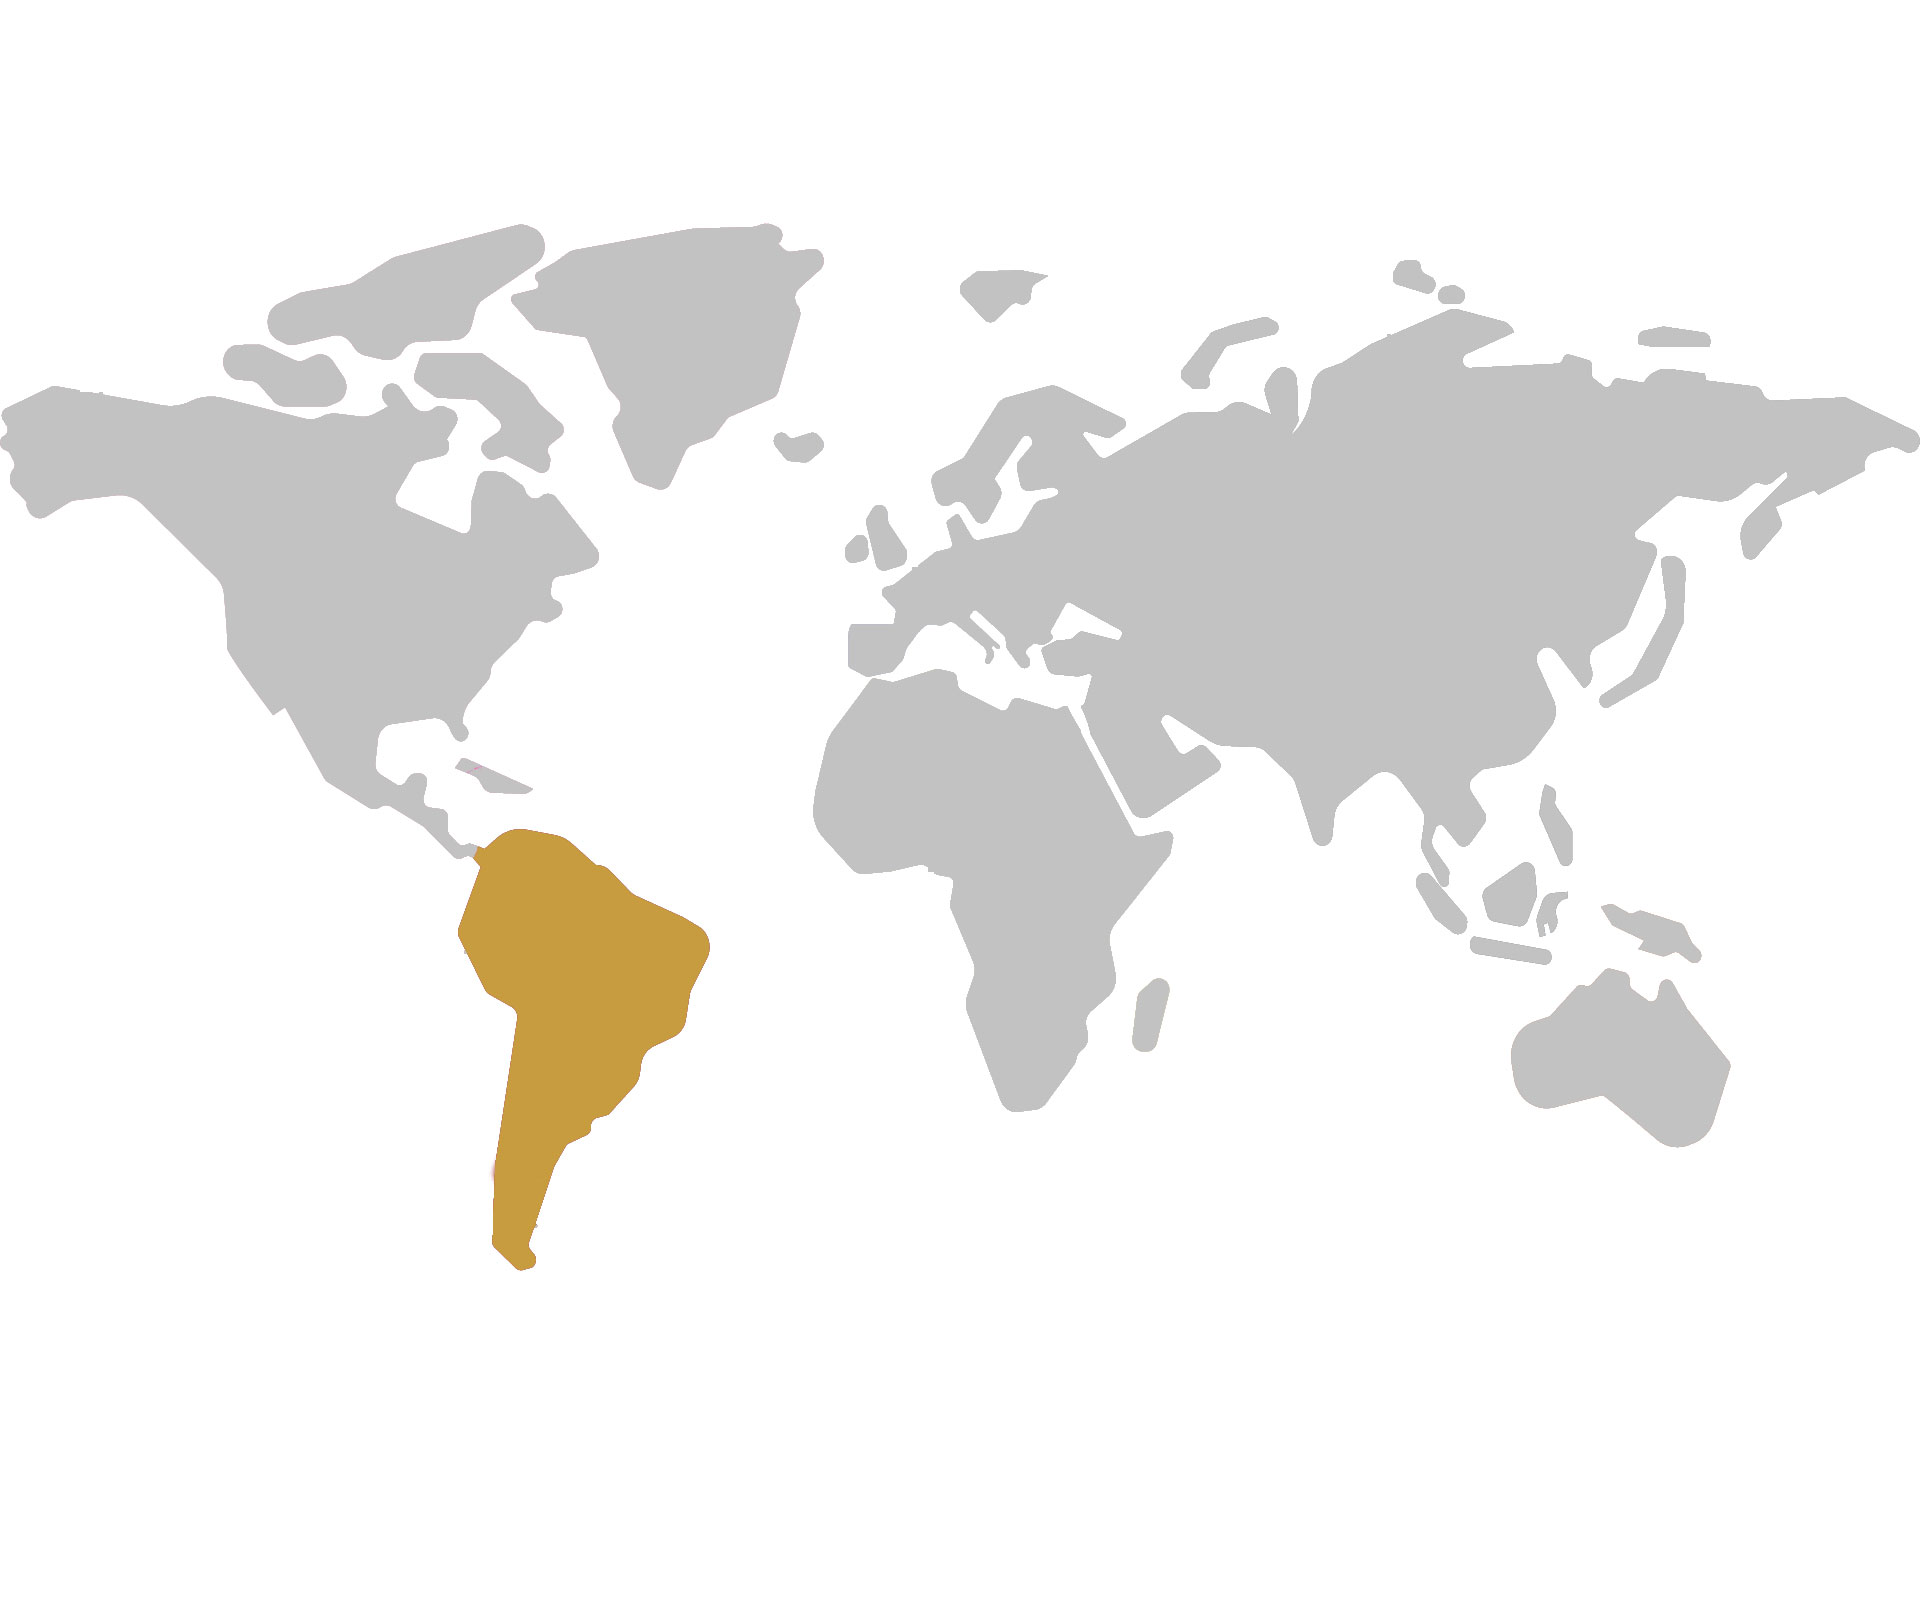 Distribuidores autorizados de América del Sur
